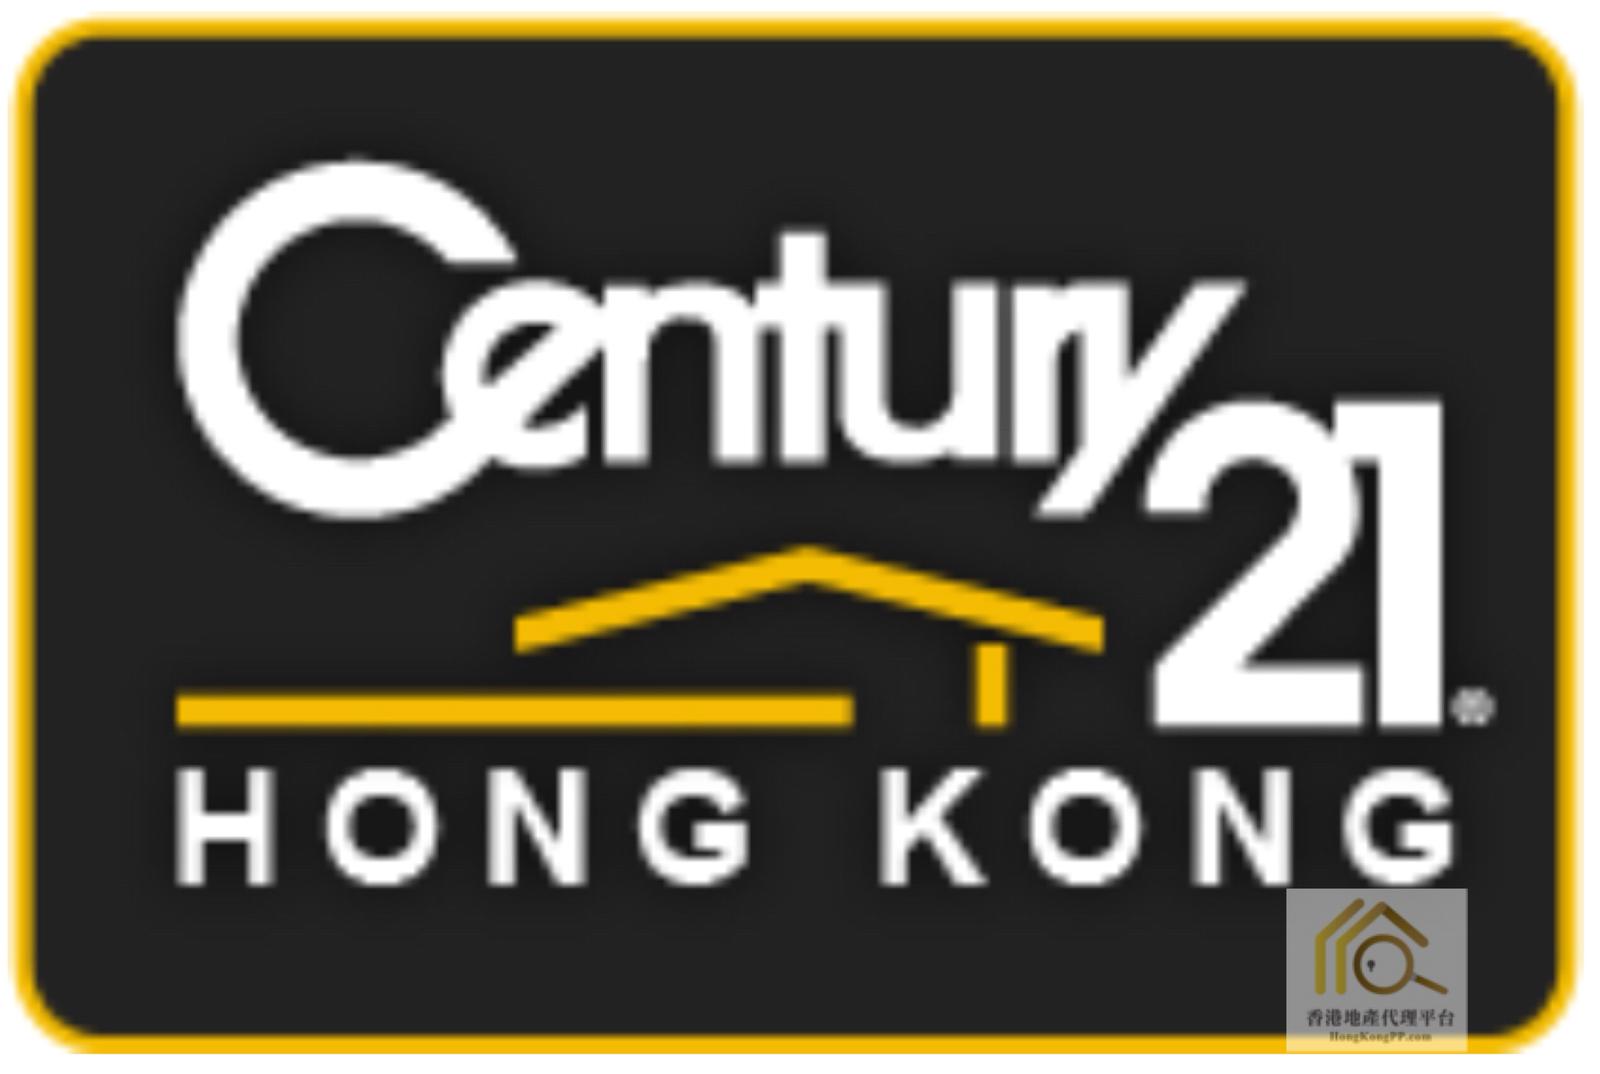 住宅地產代理: 世紀21世紀21亞太物業顧問有限公司